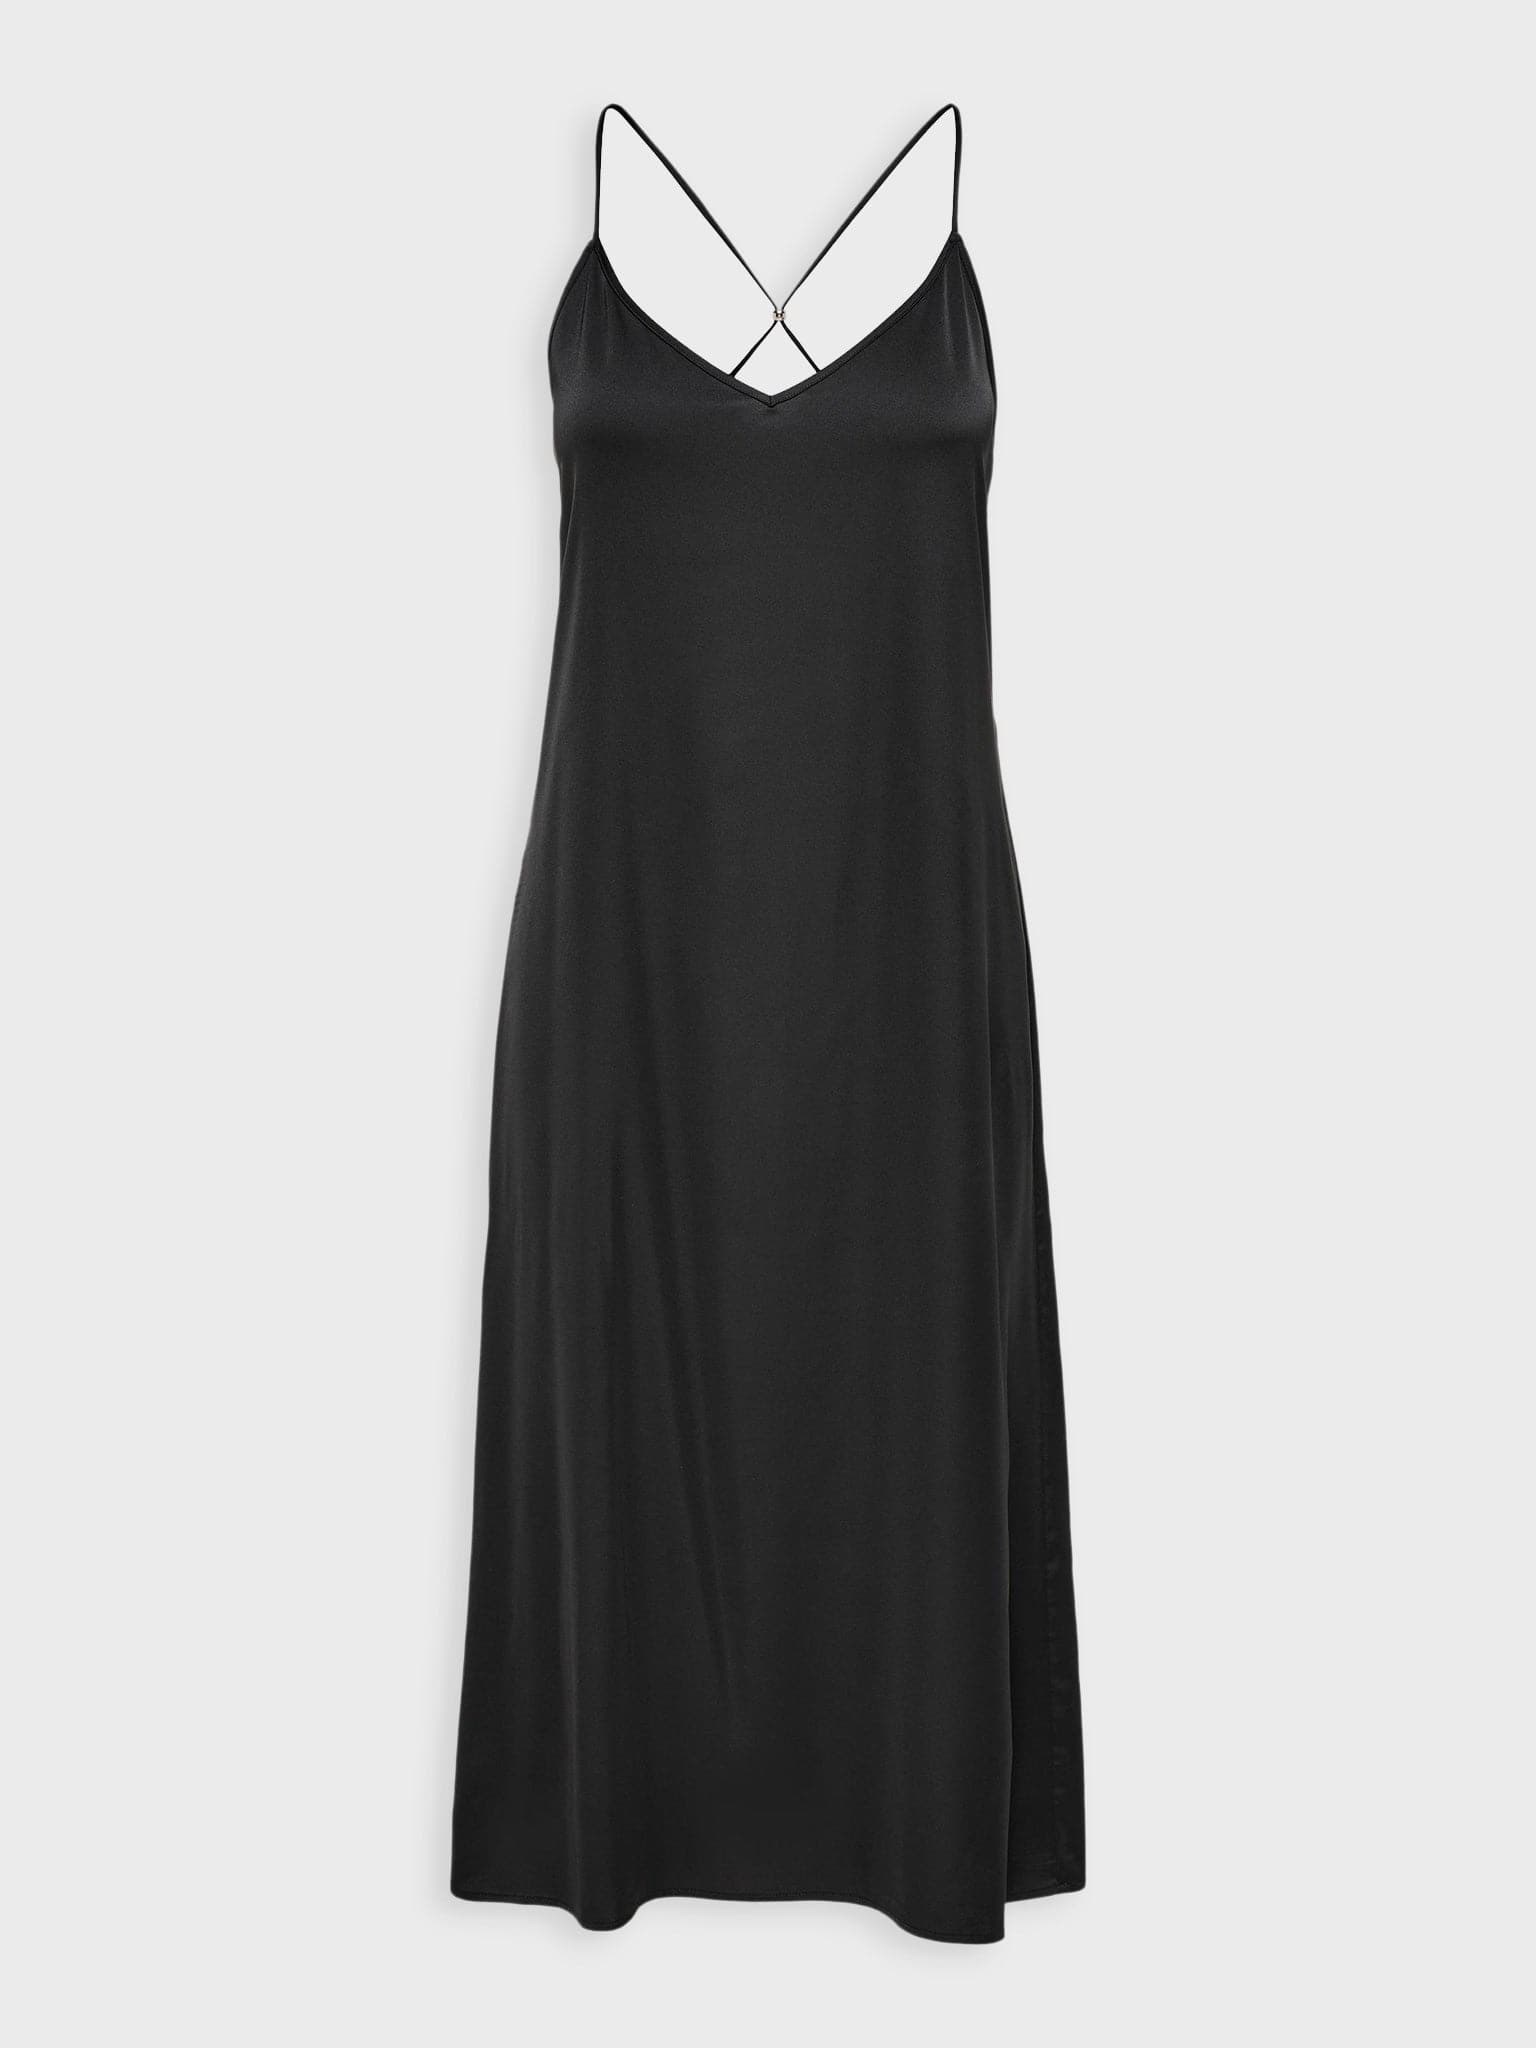 Γυναικείο φόρεμα maxi χιαστή τιράντα | 15221841